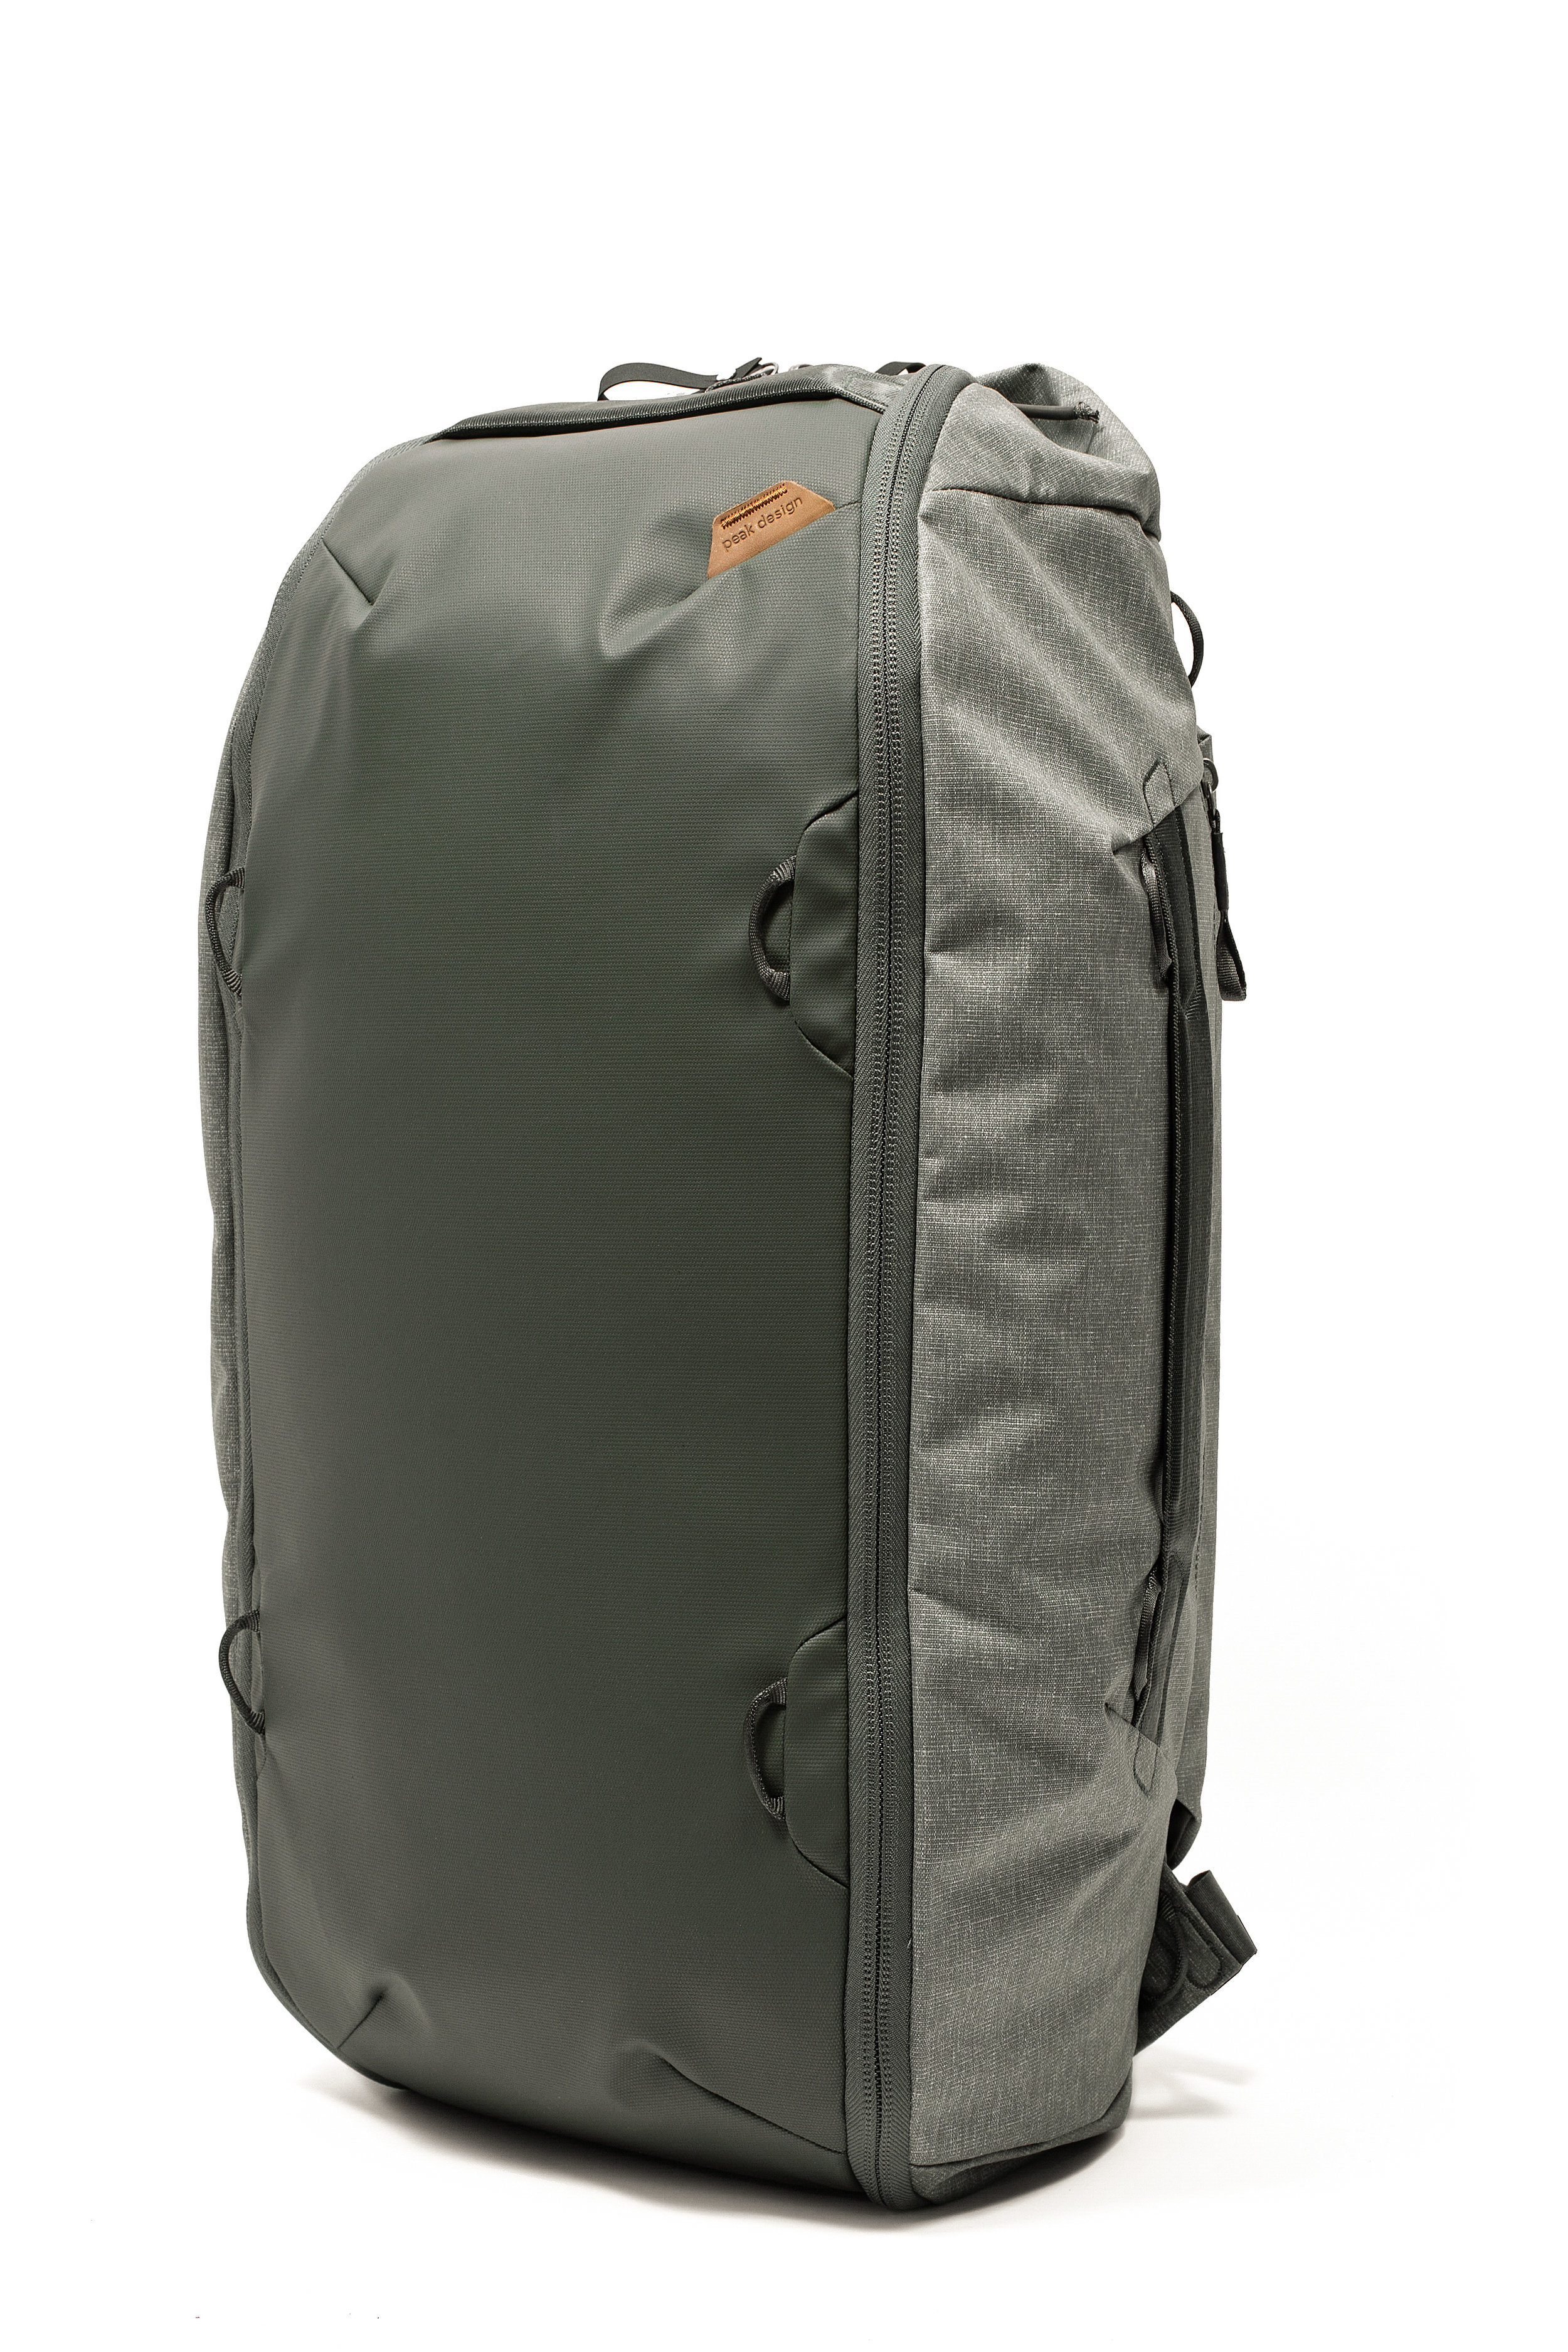 peak design travel duffelpack 65l review